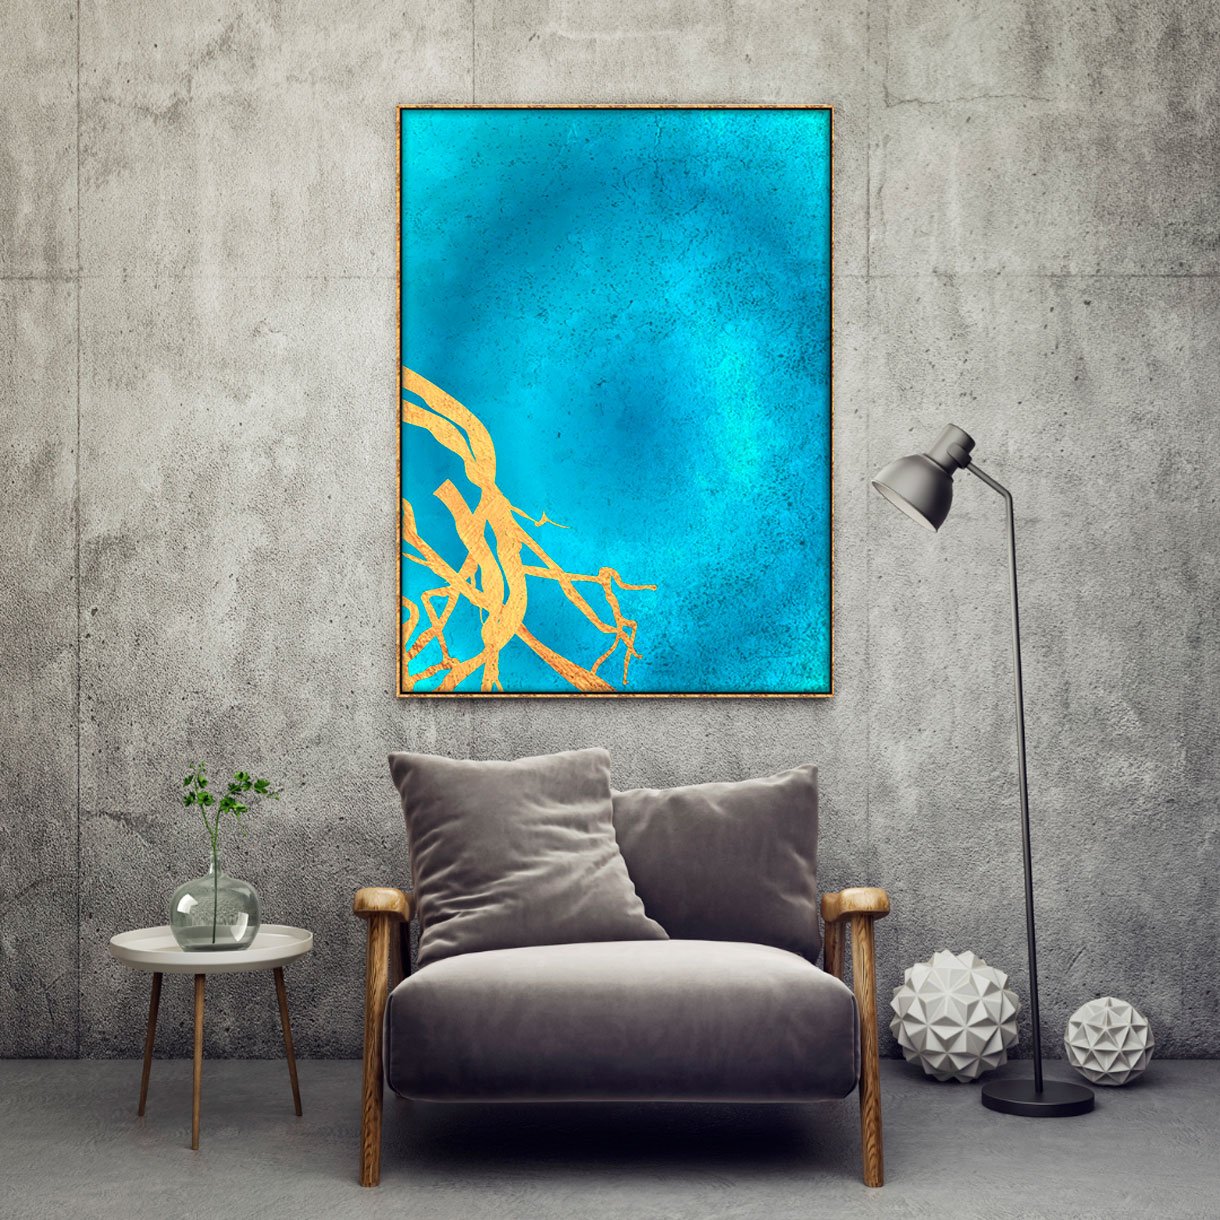 Tela Canvas com Moldura Dourada Arte Moderna Blue e Gold 90x120 cm